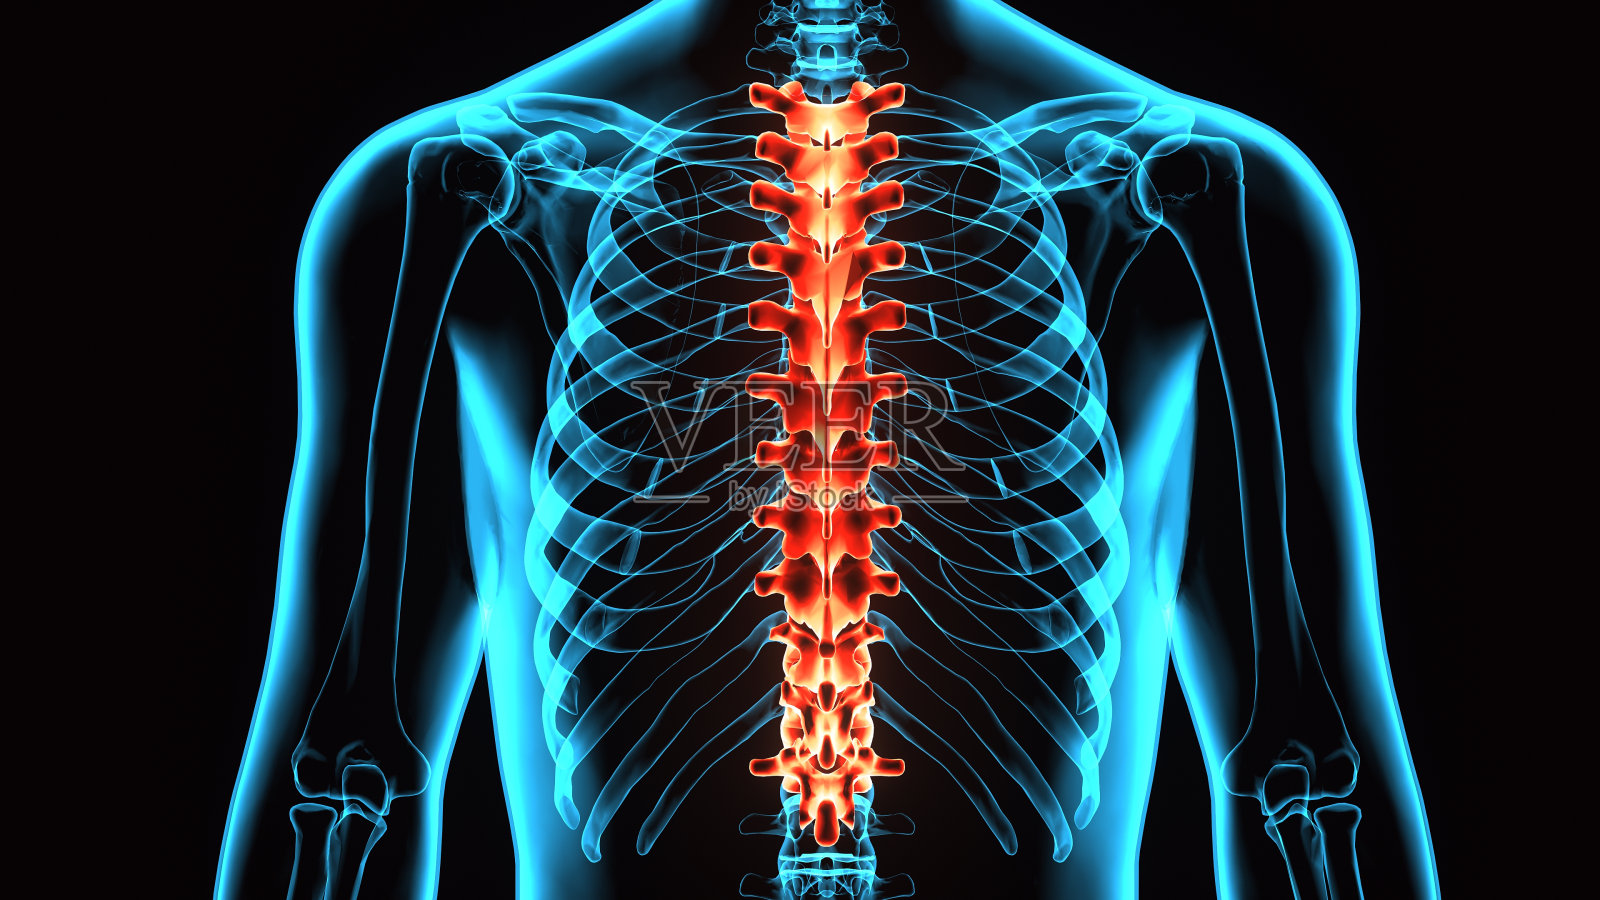 脊髓(胸椎)是人体骨骼解剖学的一部分照片摄影图片